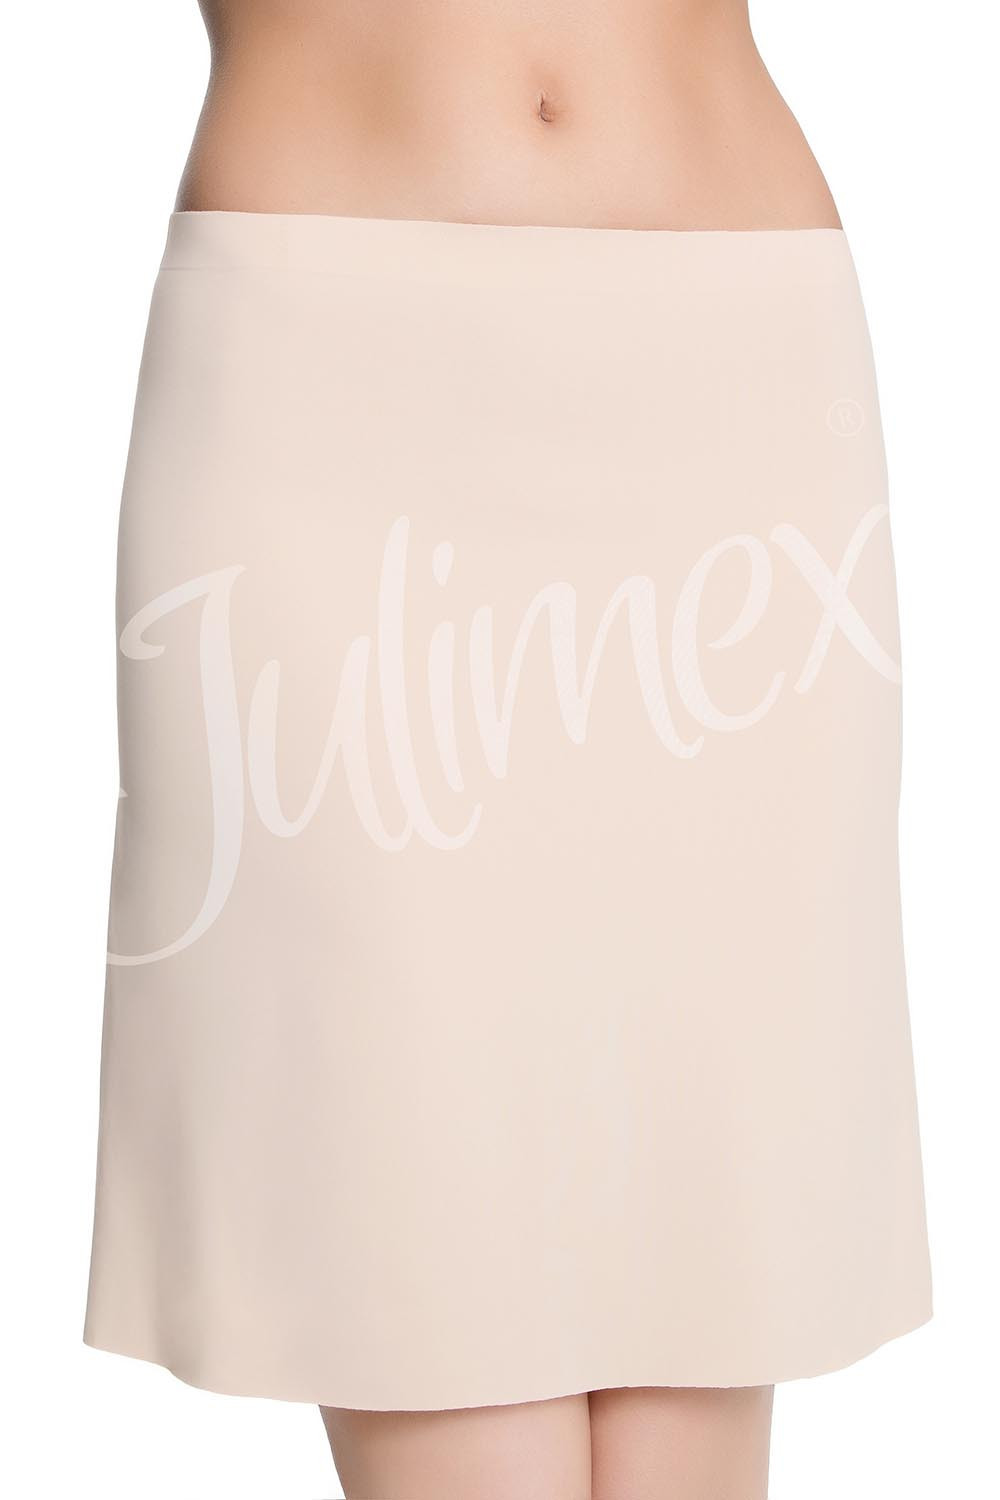 Julimex Półhalka Soft & Smooth kolor:natural M